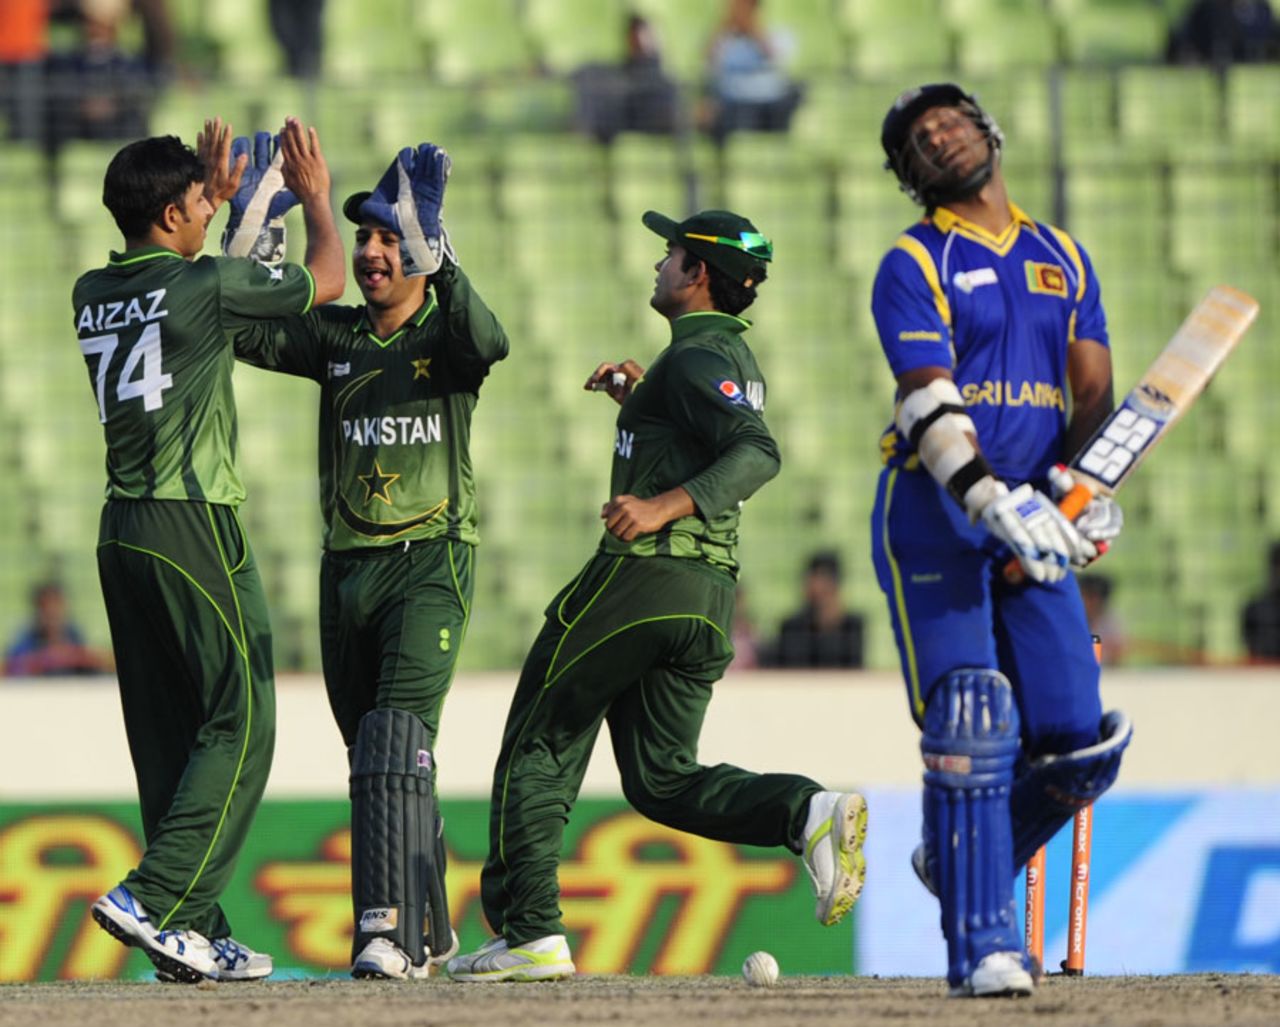 Kumar Sangakkara is dismissed by Aizaz Cheema, Pakistan v Sri Lanka, Asia Cup, Mirpur, March 15, 2012